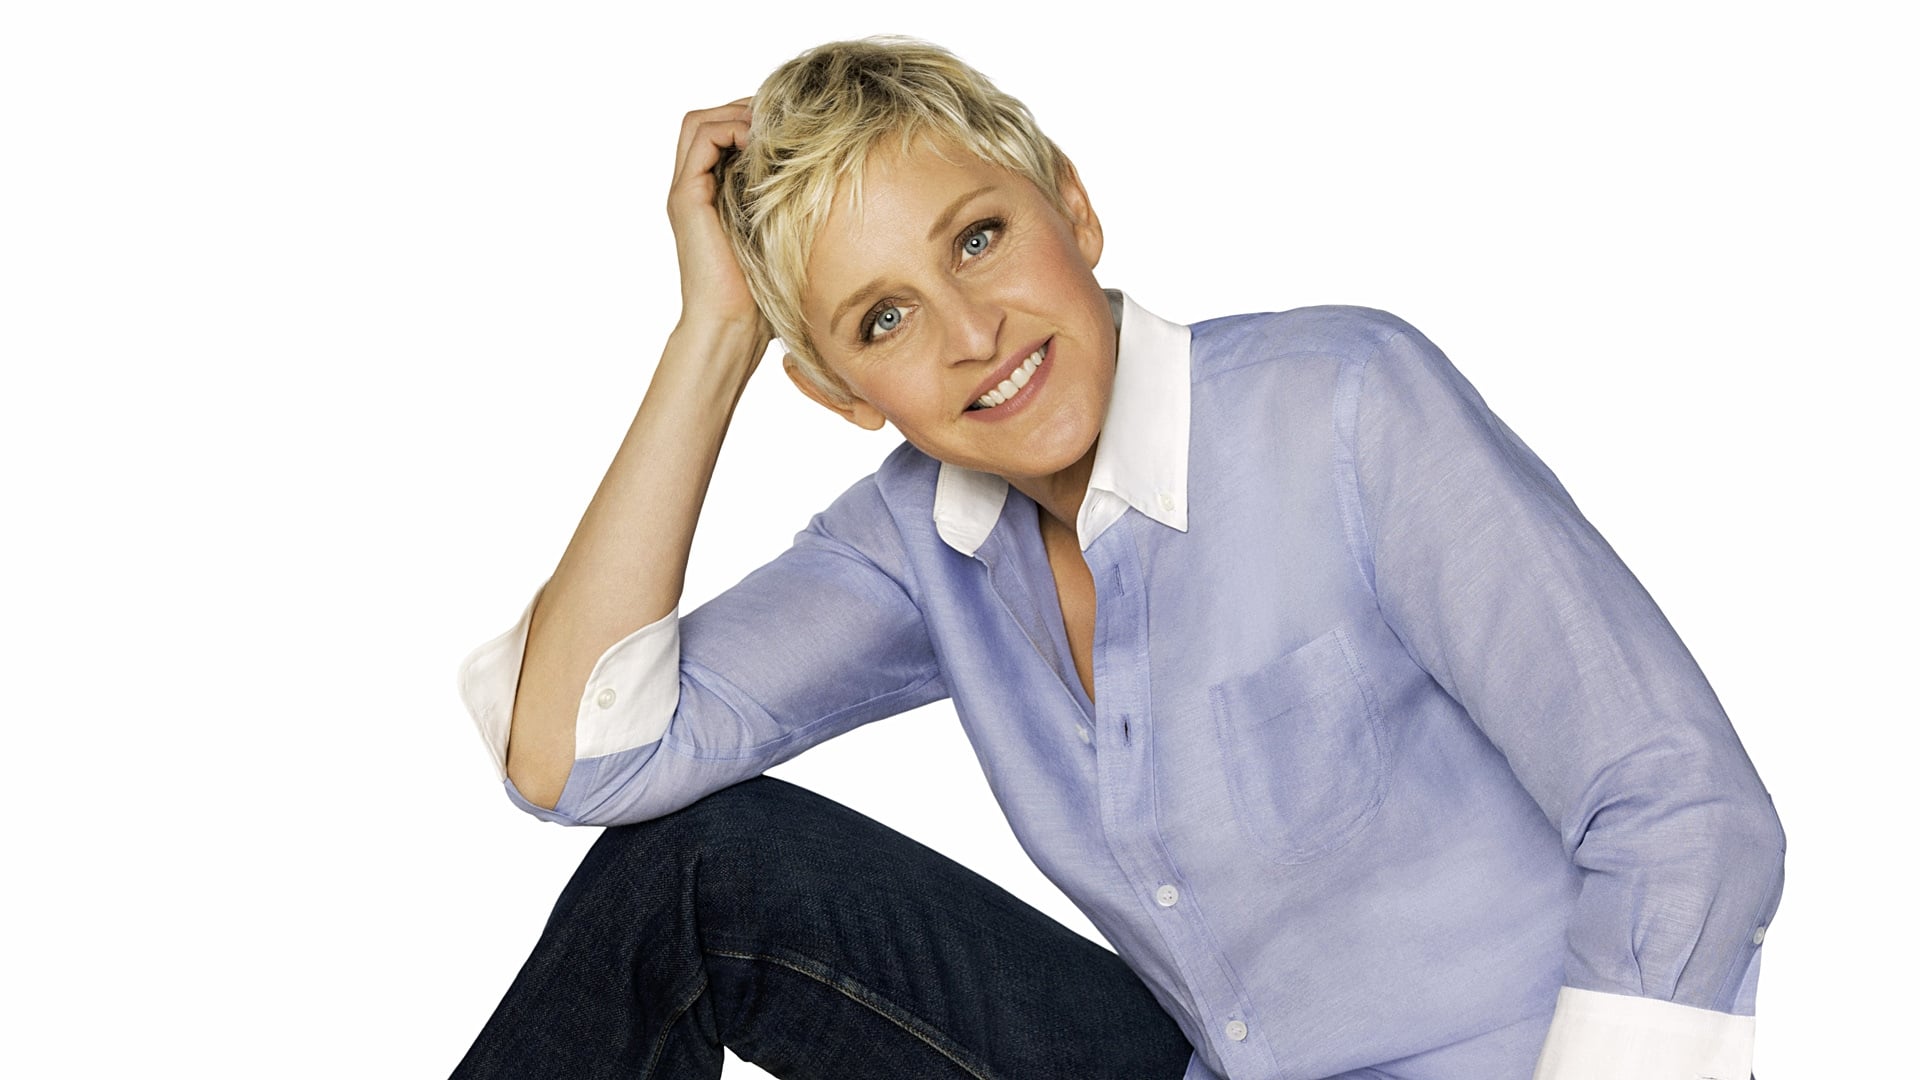 The Ellen DeGeneres Show - Season 14